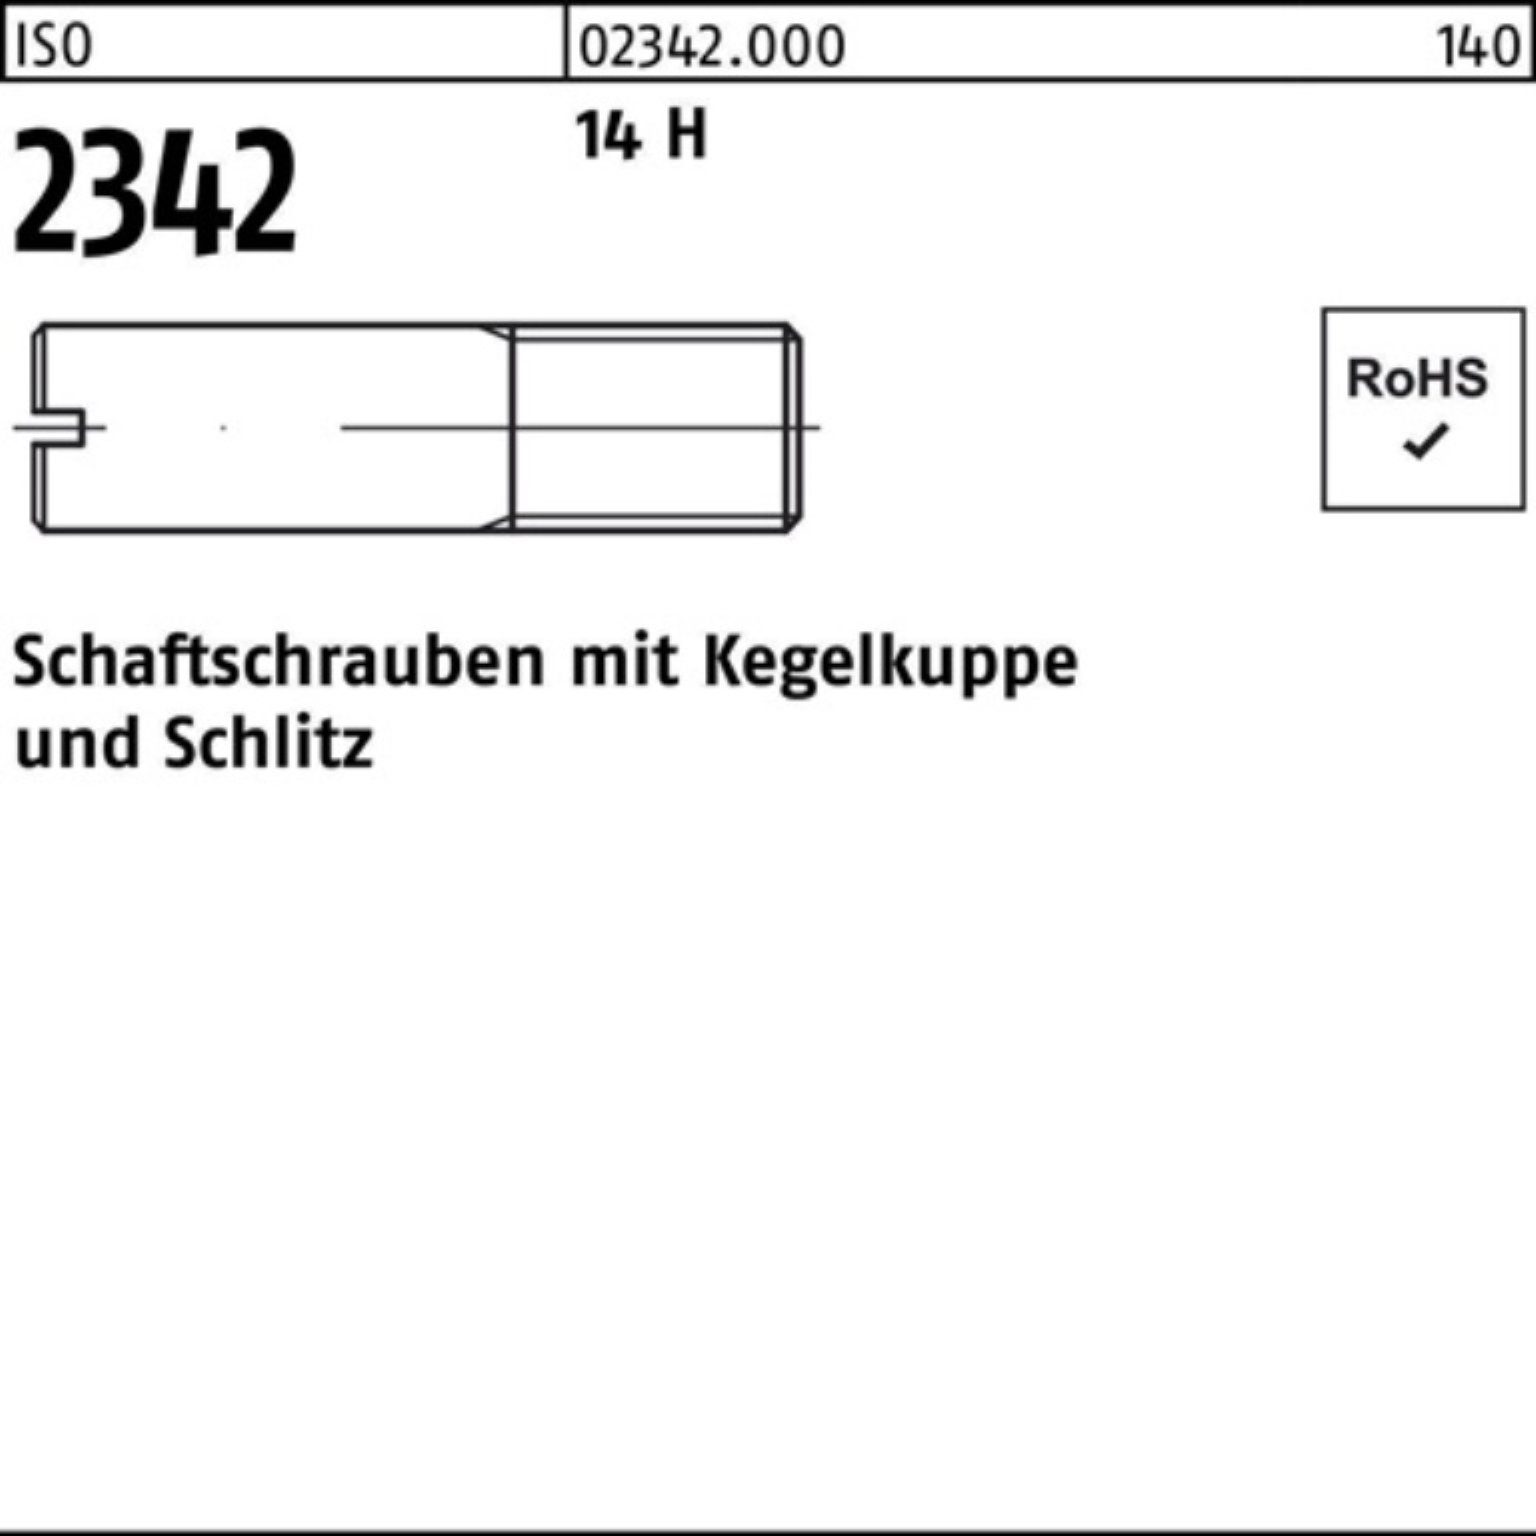 Reyher Schraube 100er Pack Schaftschraube ISO 2342 Kegelkuppe/Schlitz M8x 25 14 H 100